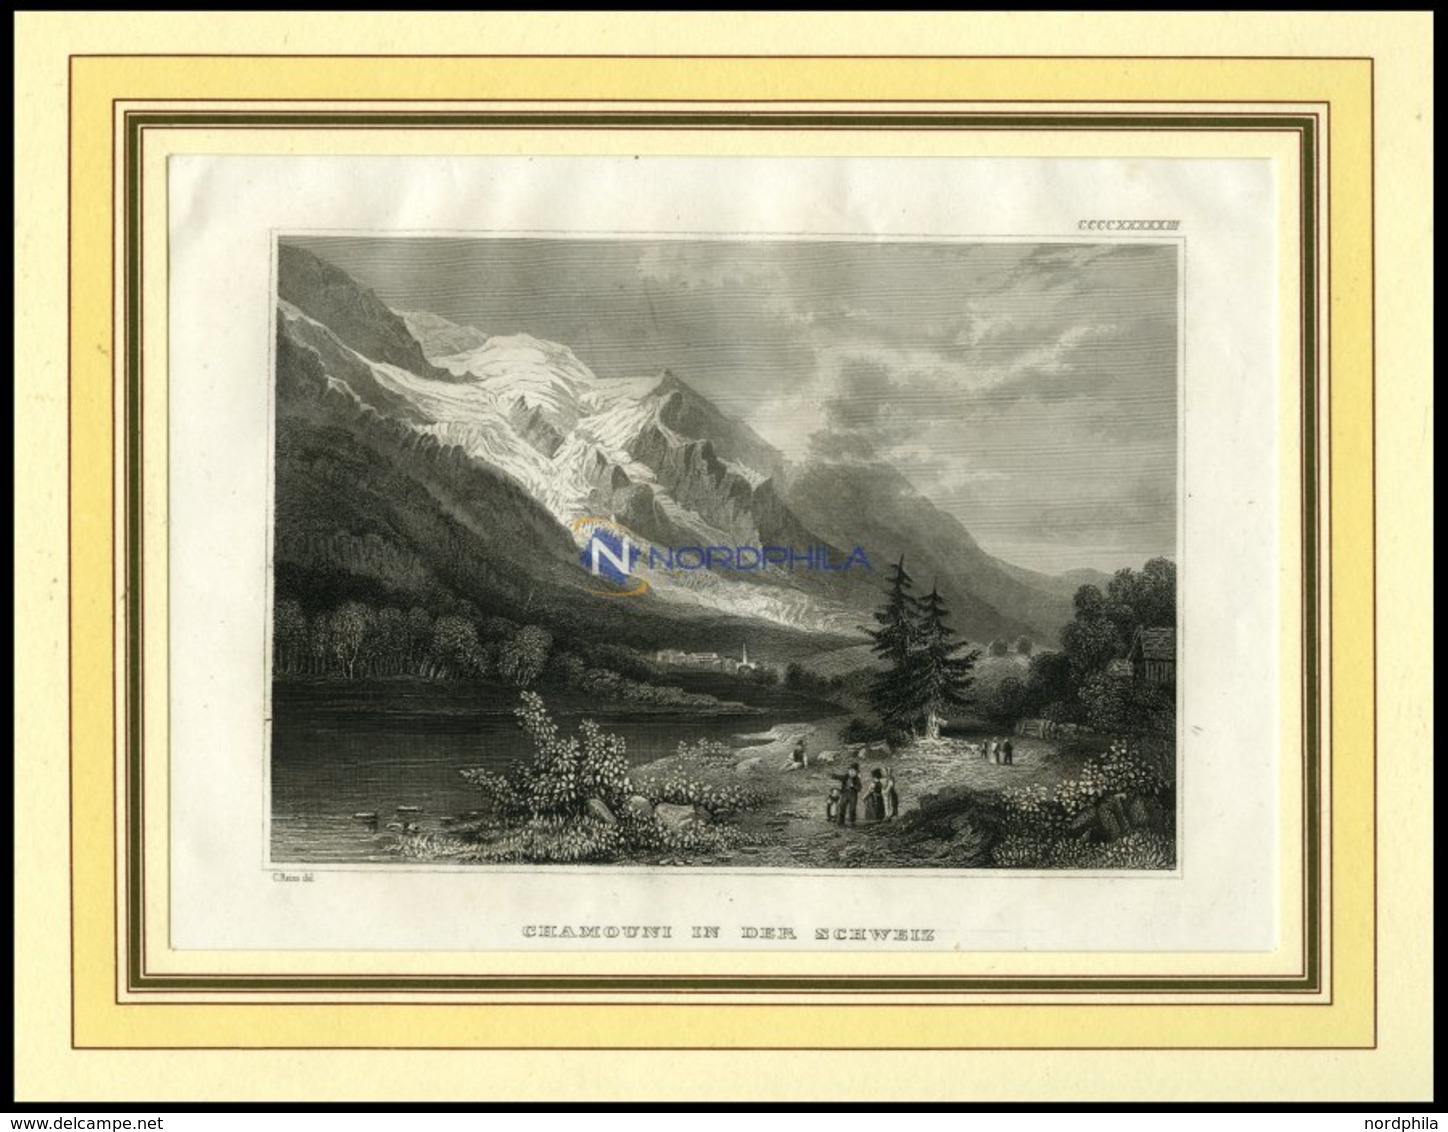 CHAMOUNY, Gesamtansicht, Blick In Das Tal, Stahlstich Von B.I.um 1840 - Litografia